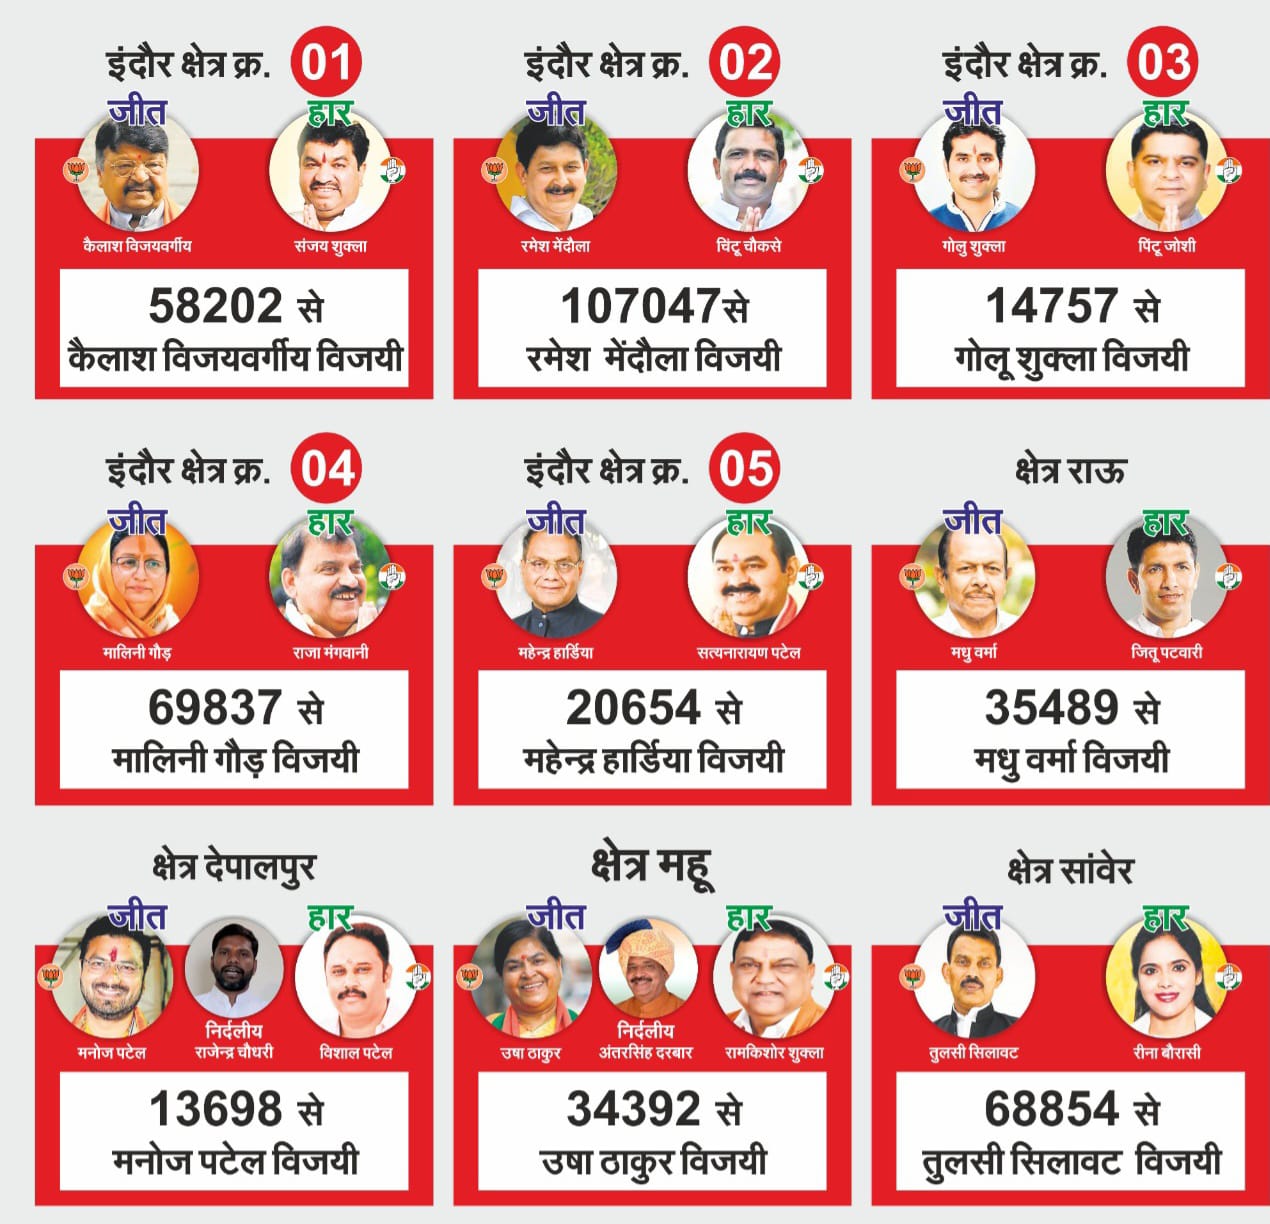 इंदौर को सभी 09 सीटों के परिणाम